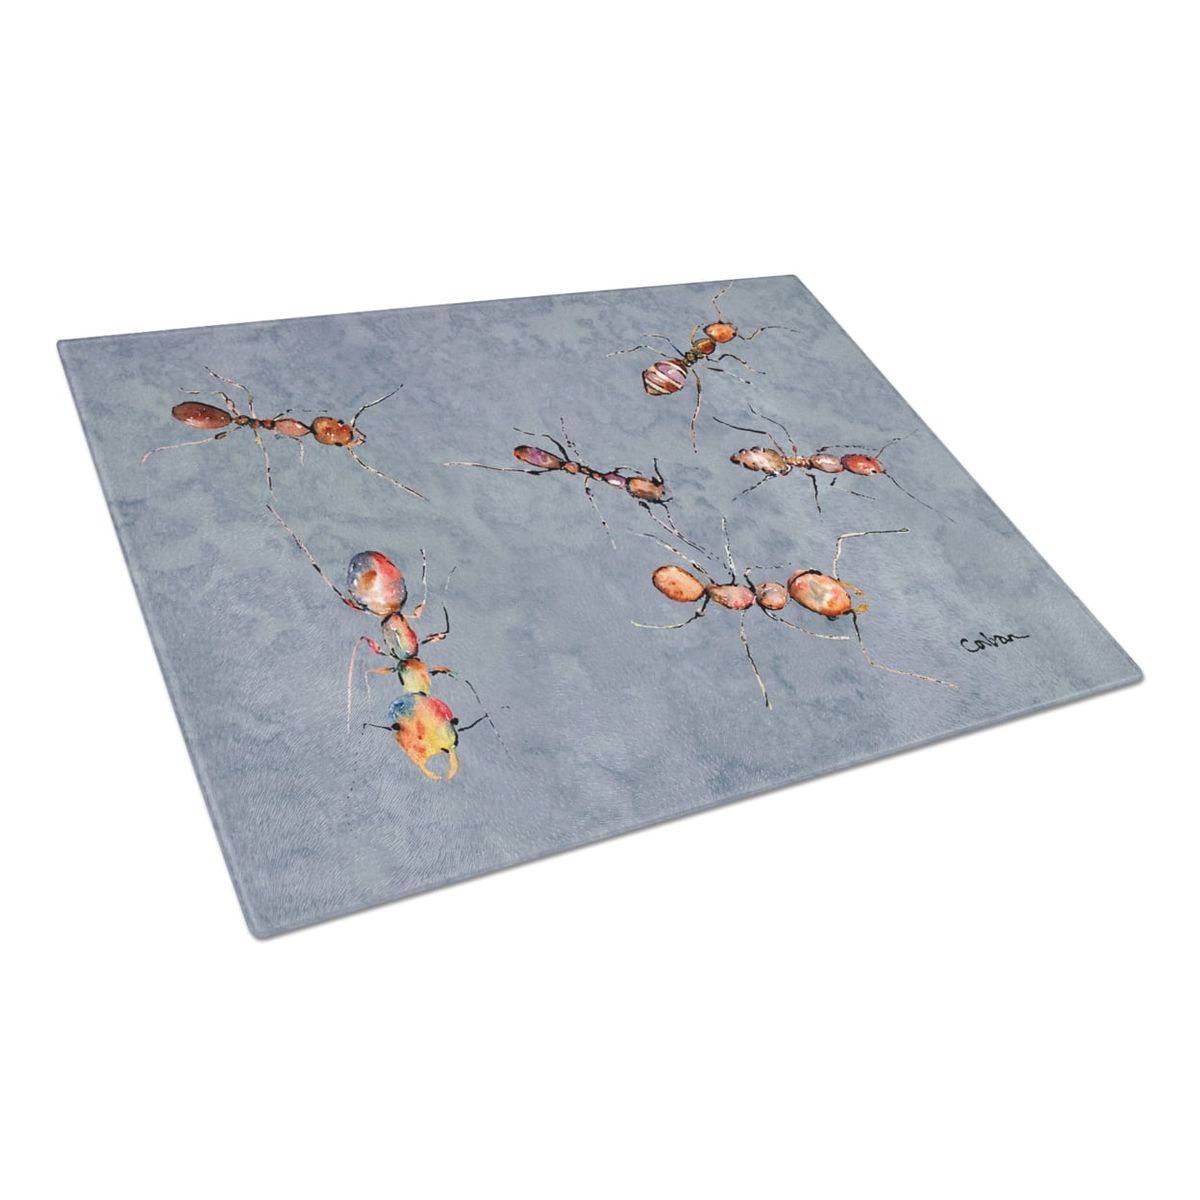 楽天Walmart 楽天市場店[送料無料] Caroline's Treasures 蟻のガラスまな板 大 [楽天海外通販] | Caroline's Treasures Ants Glass Cutting Board Large